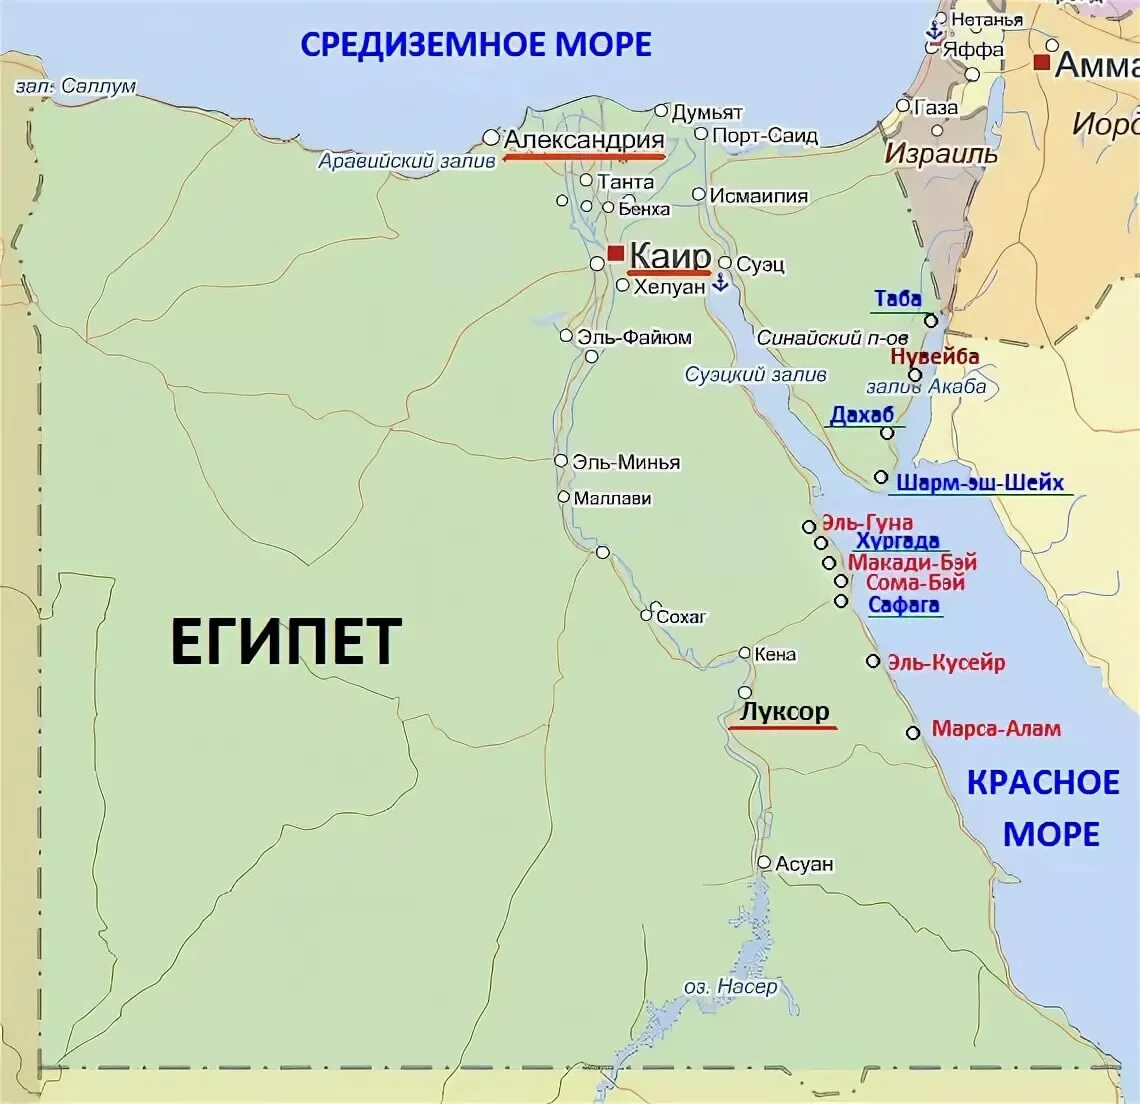 Границы Египта на карте. Курорты Египта на карте. Карта Египта с курортами на русском языке. Карта Египта на русском языке с городами и курортами.